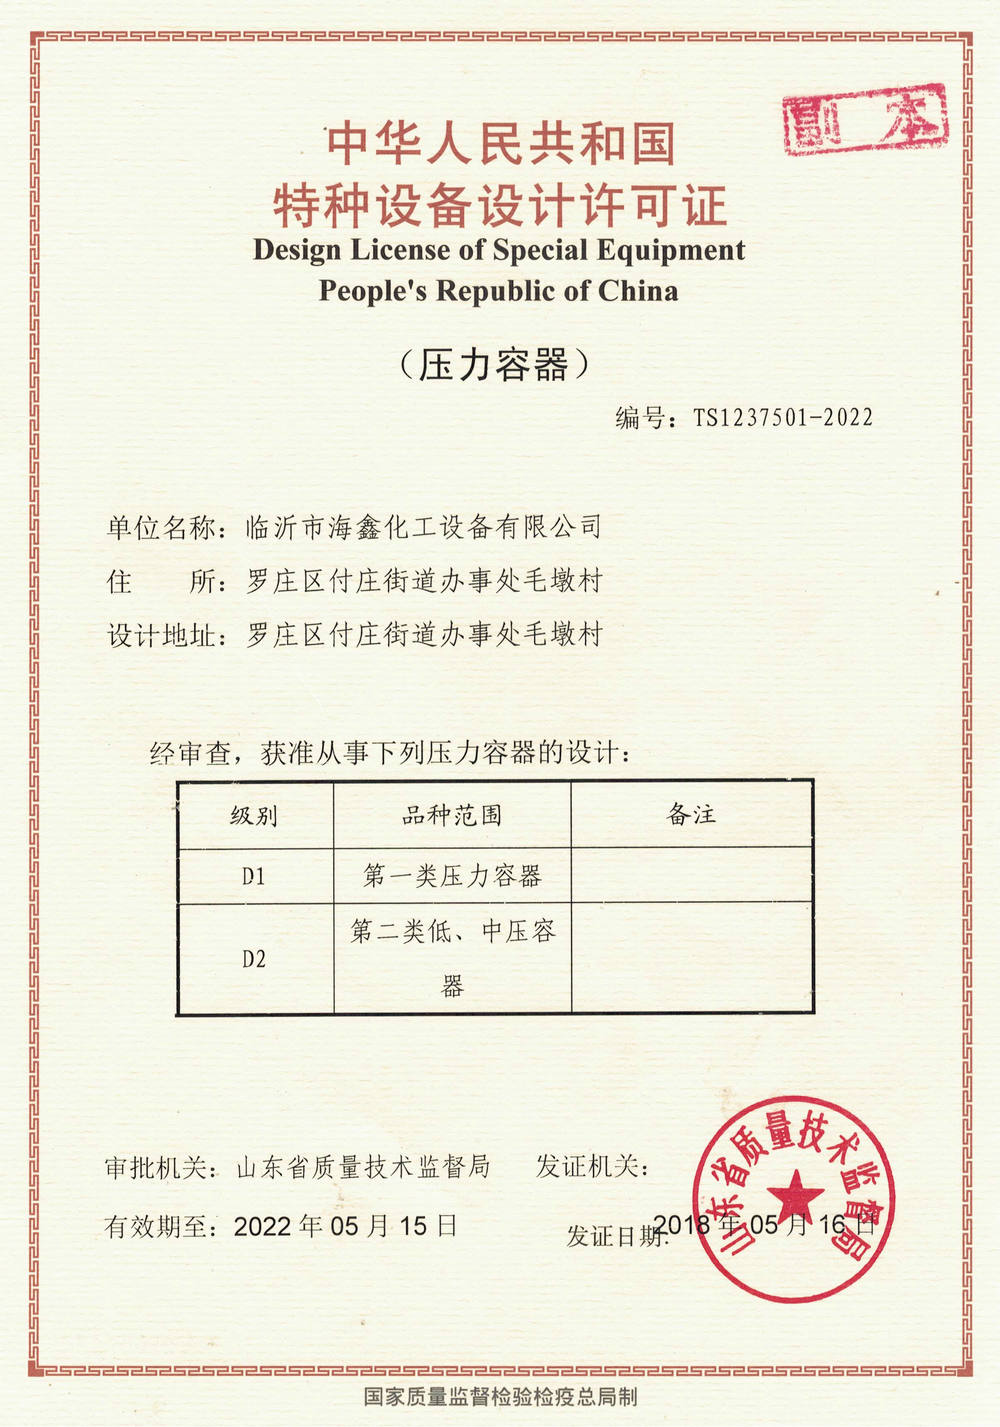 Special equipment design license